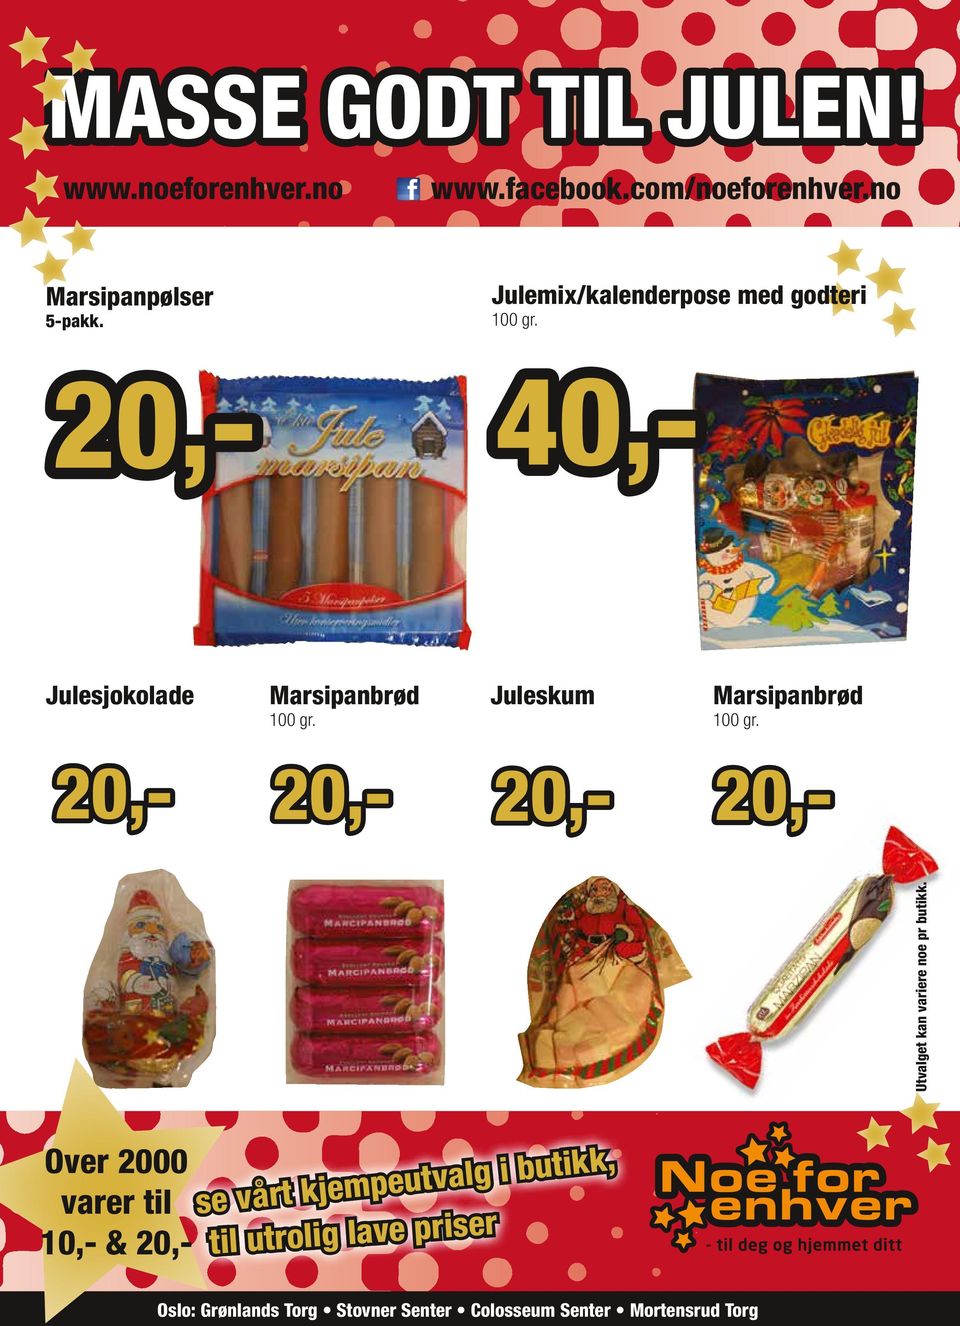 Julemix/kalenderpose med godteri 100 gr.